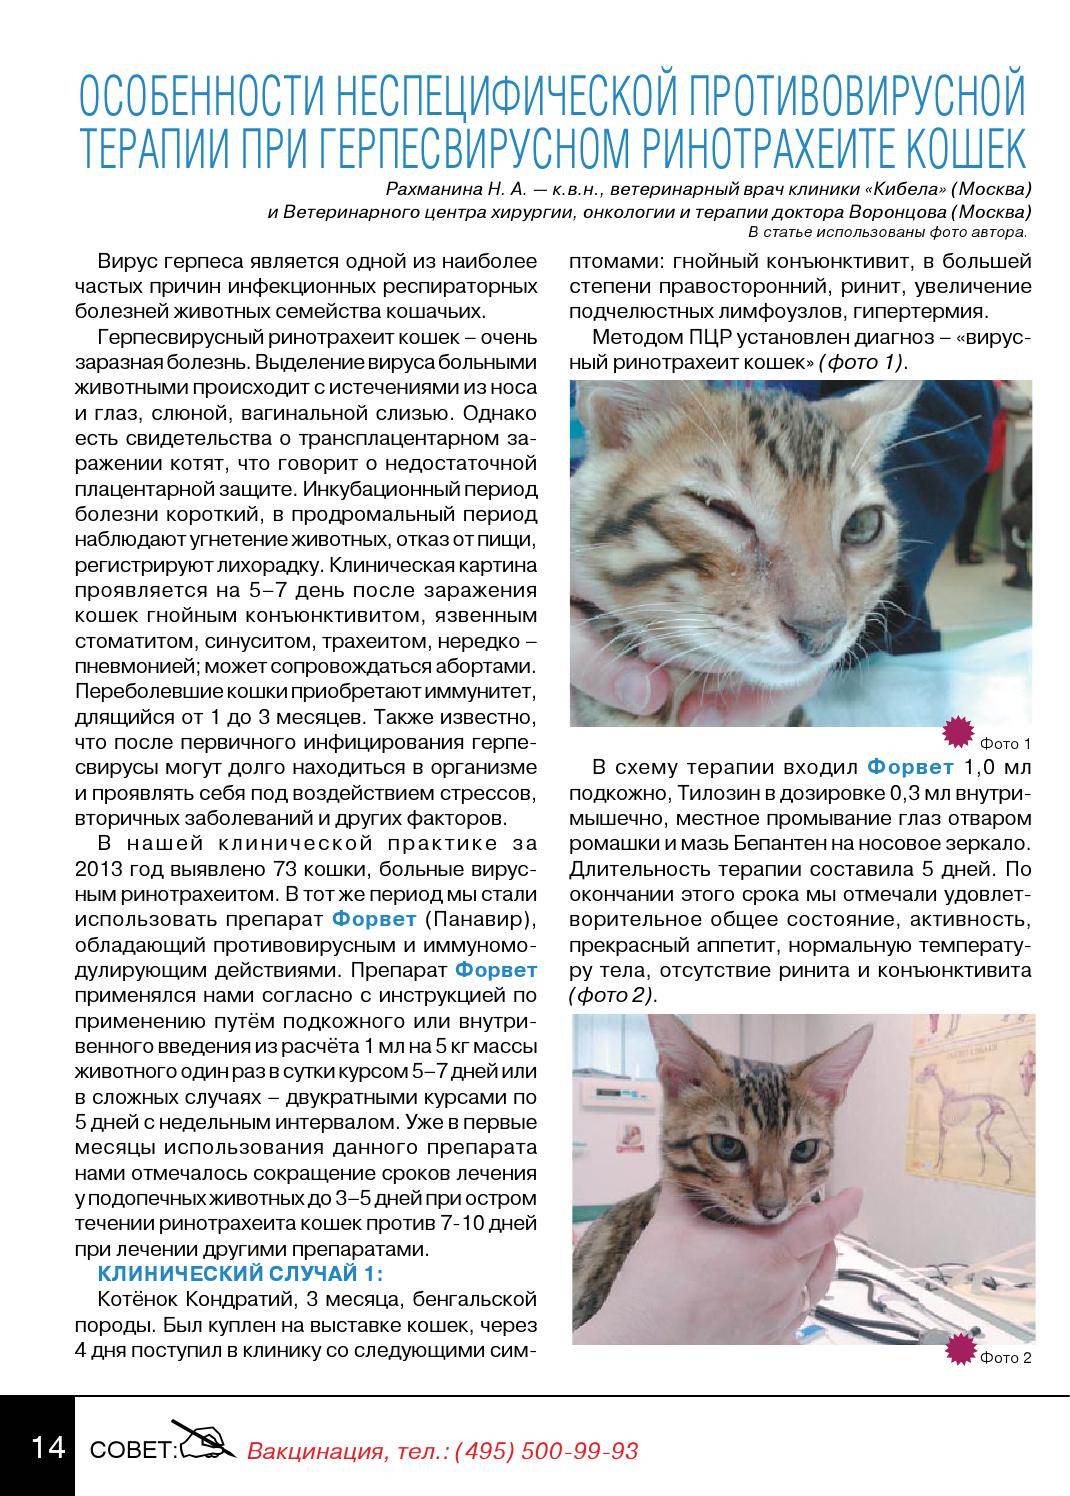 Ринотрахеит у кошек - симптомы и лечение